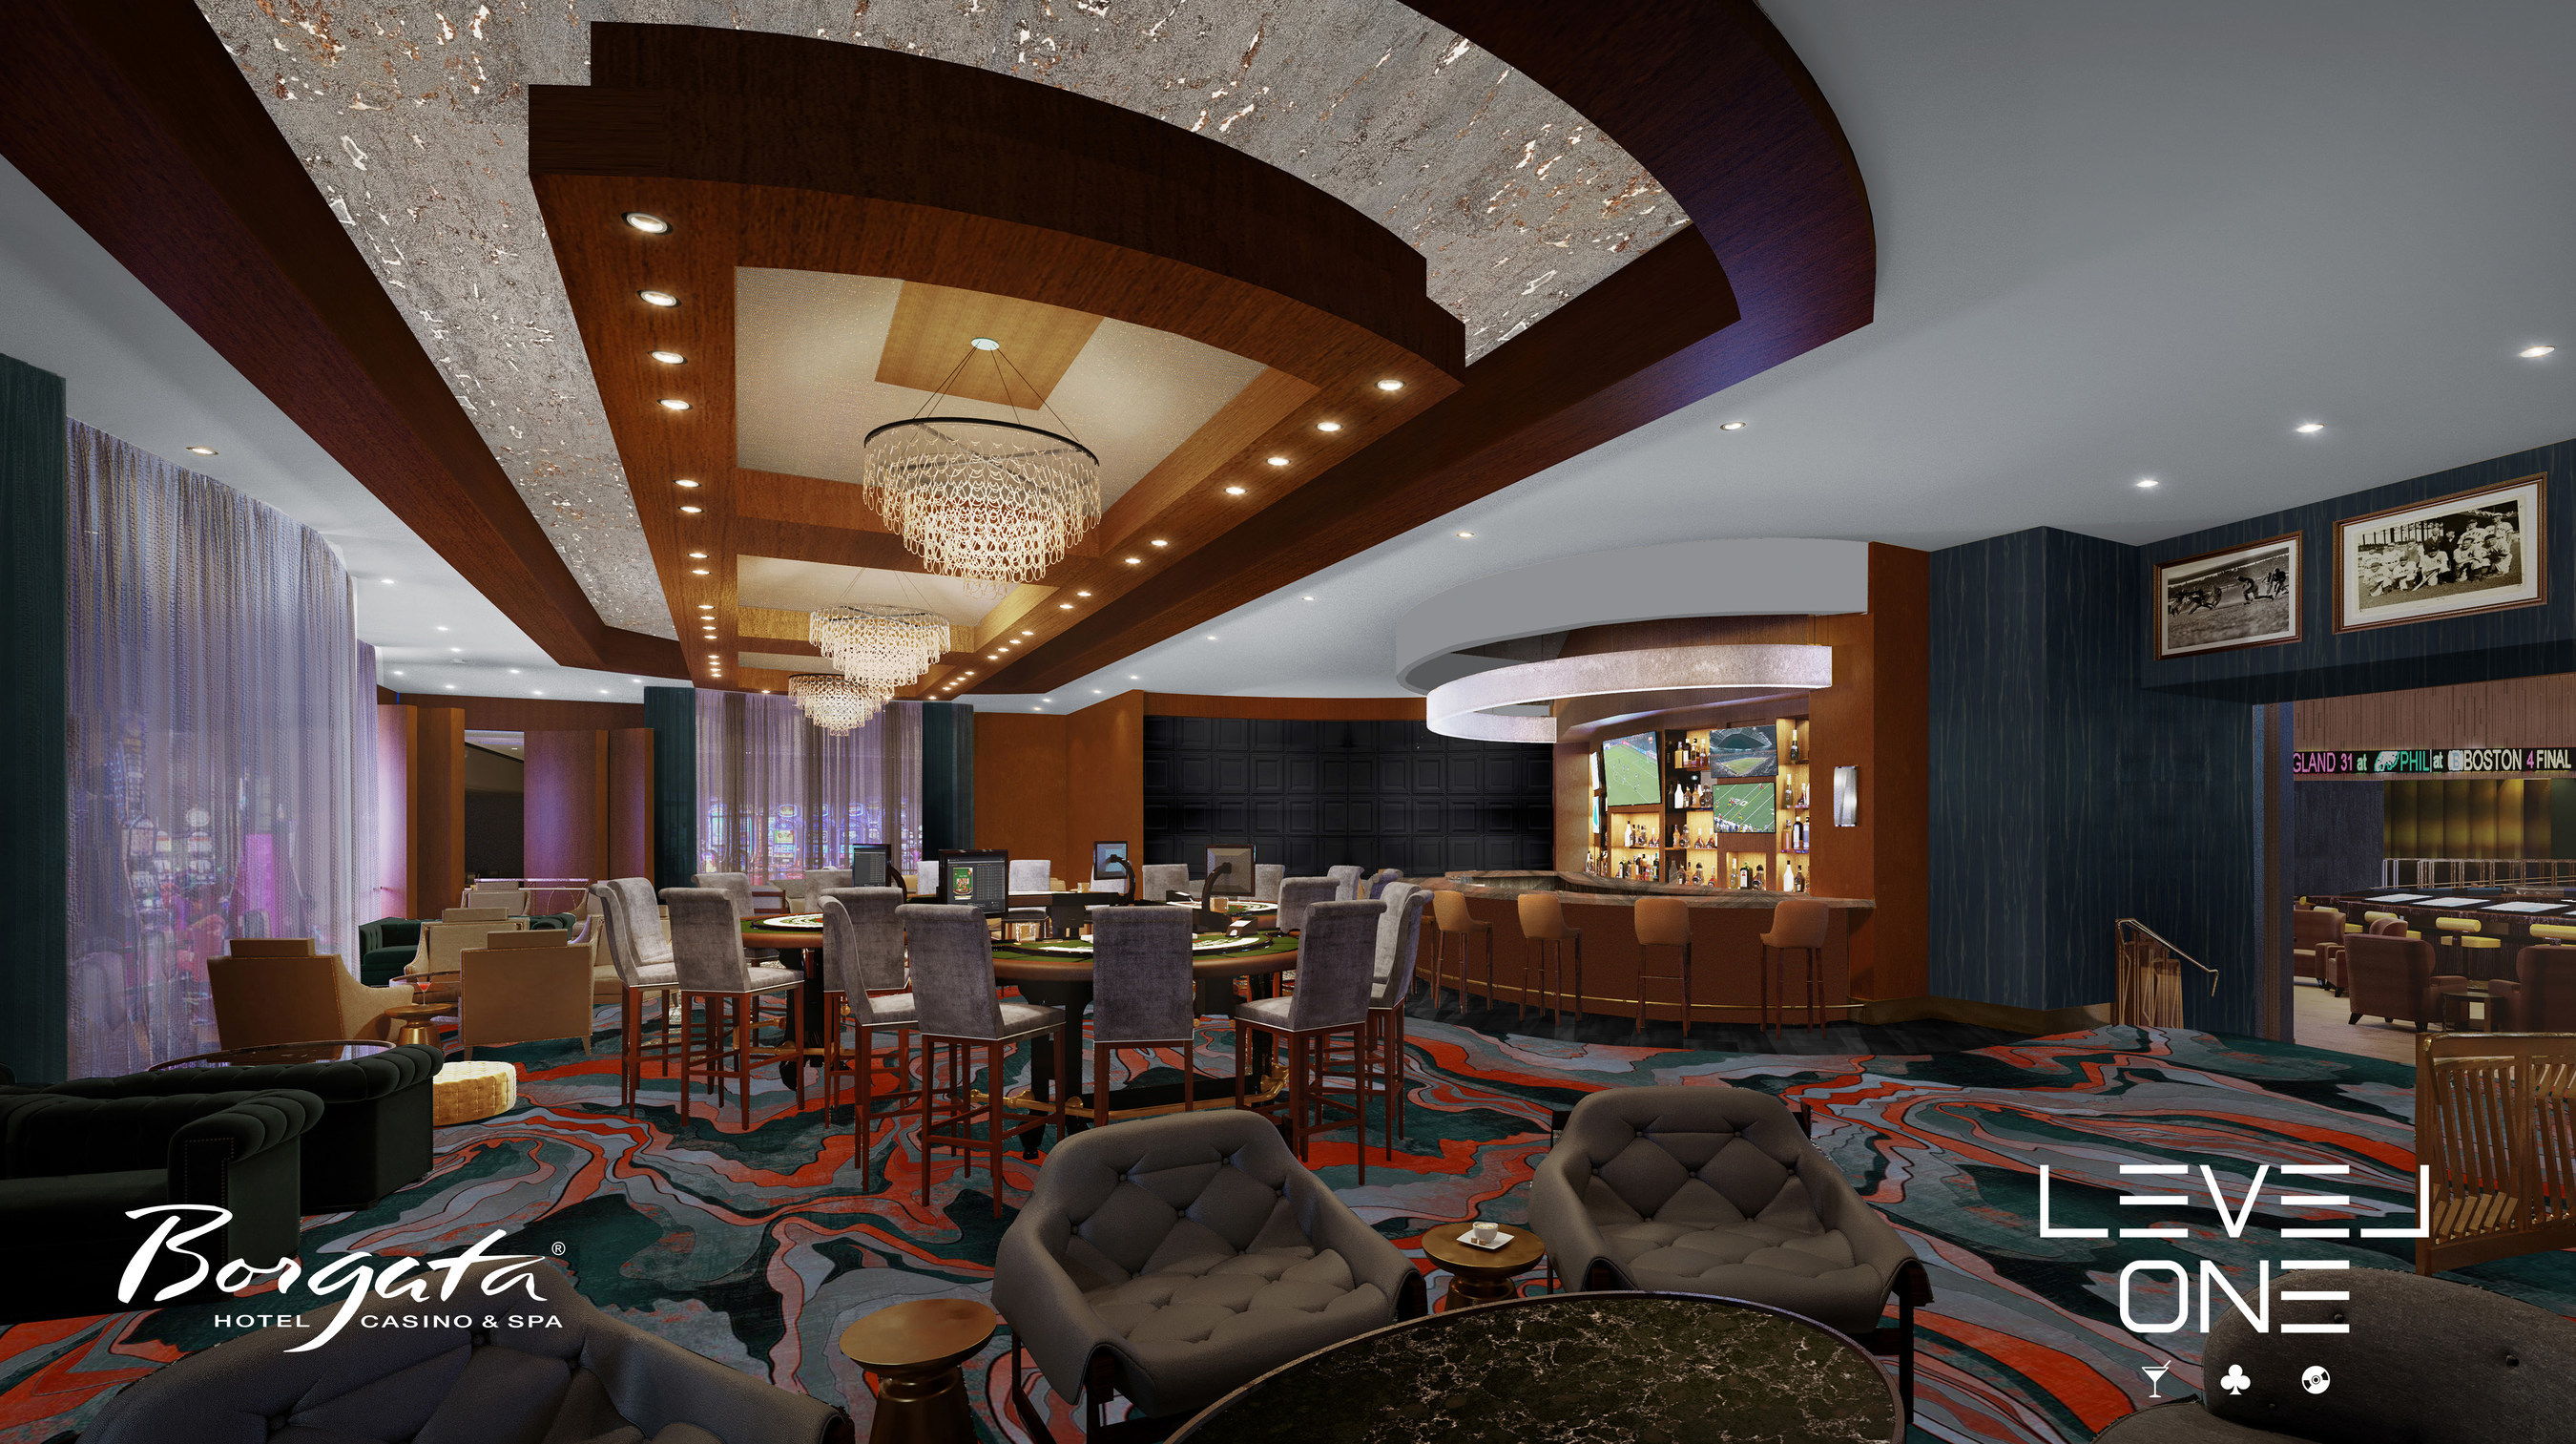 Borgata Hotel Casino Spa Announces Debut Of Moneyline Bar